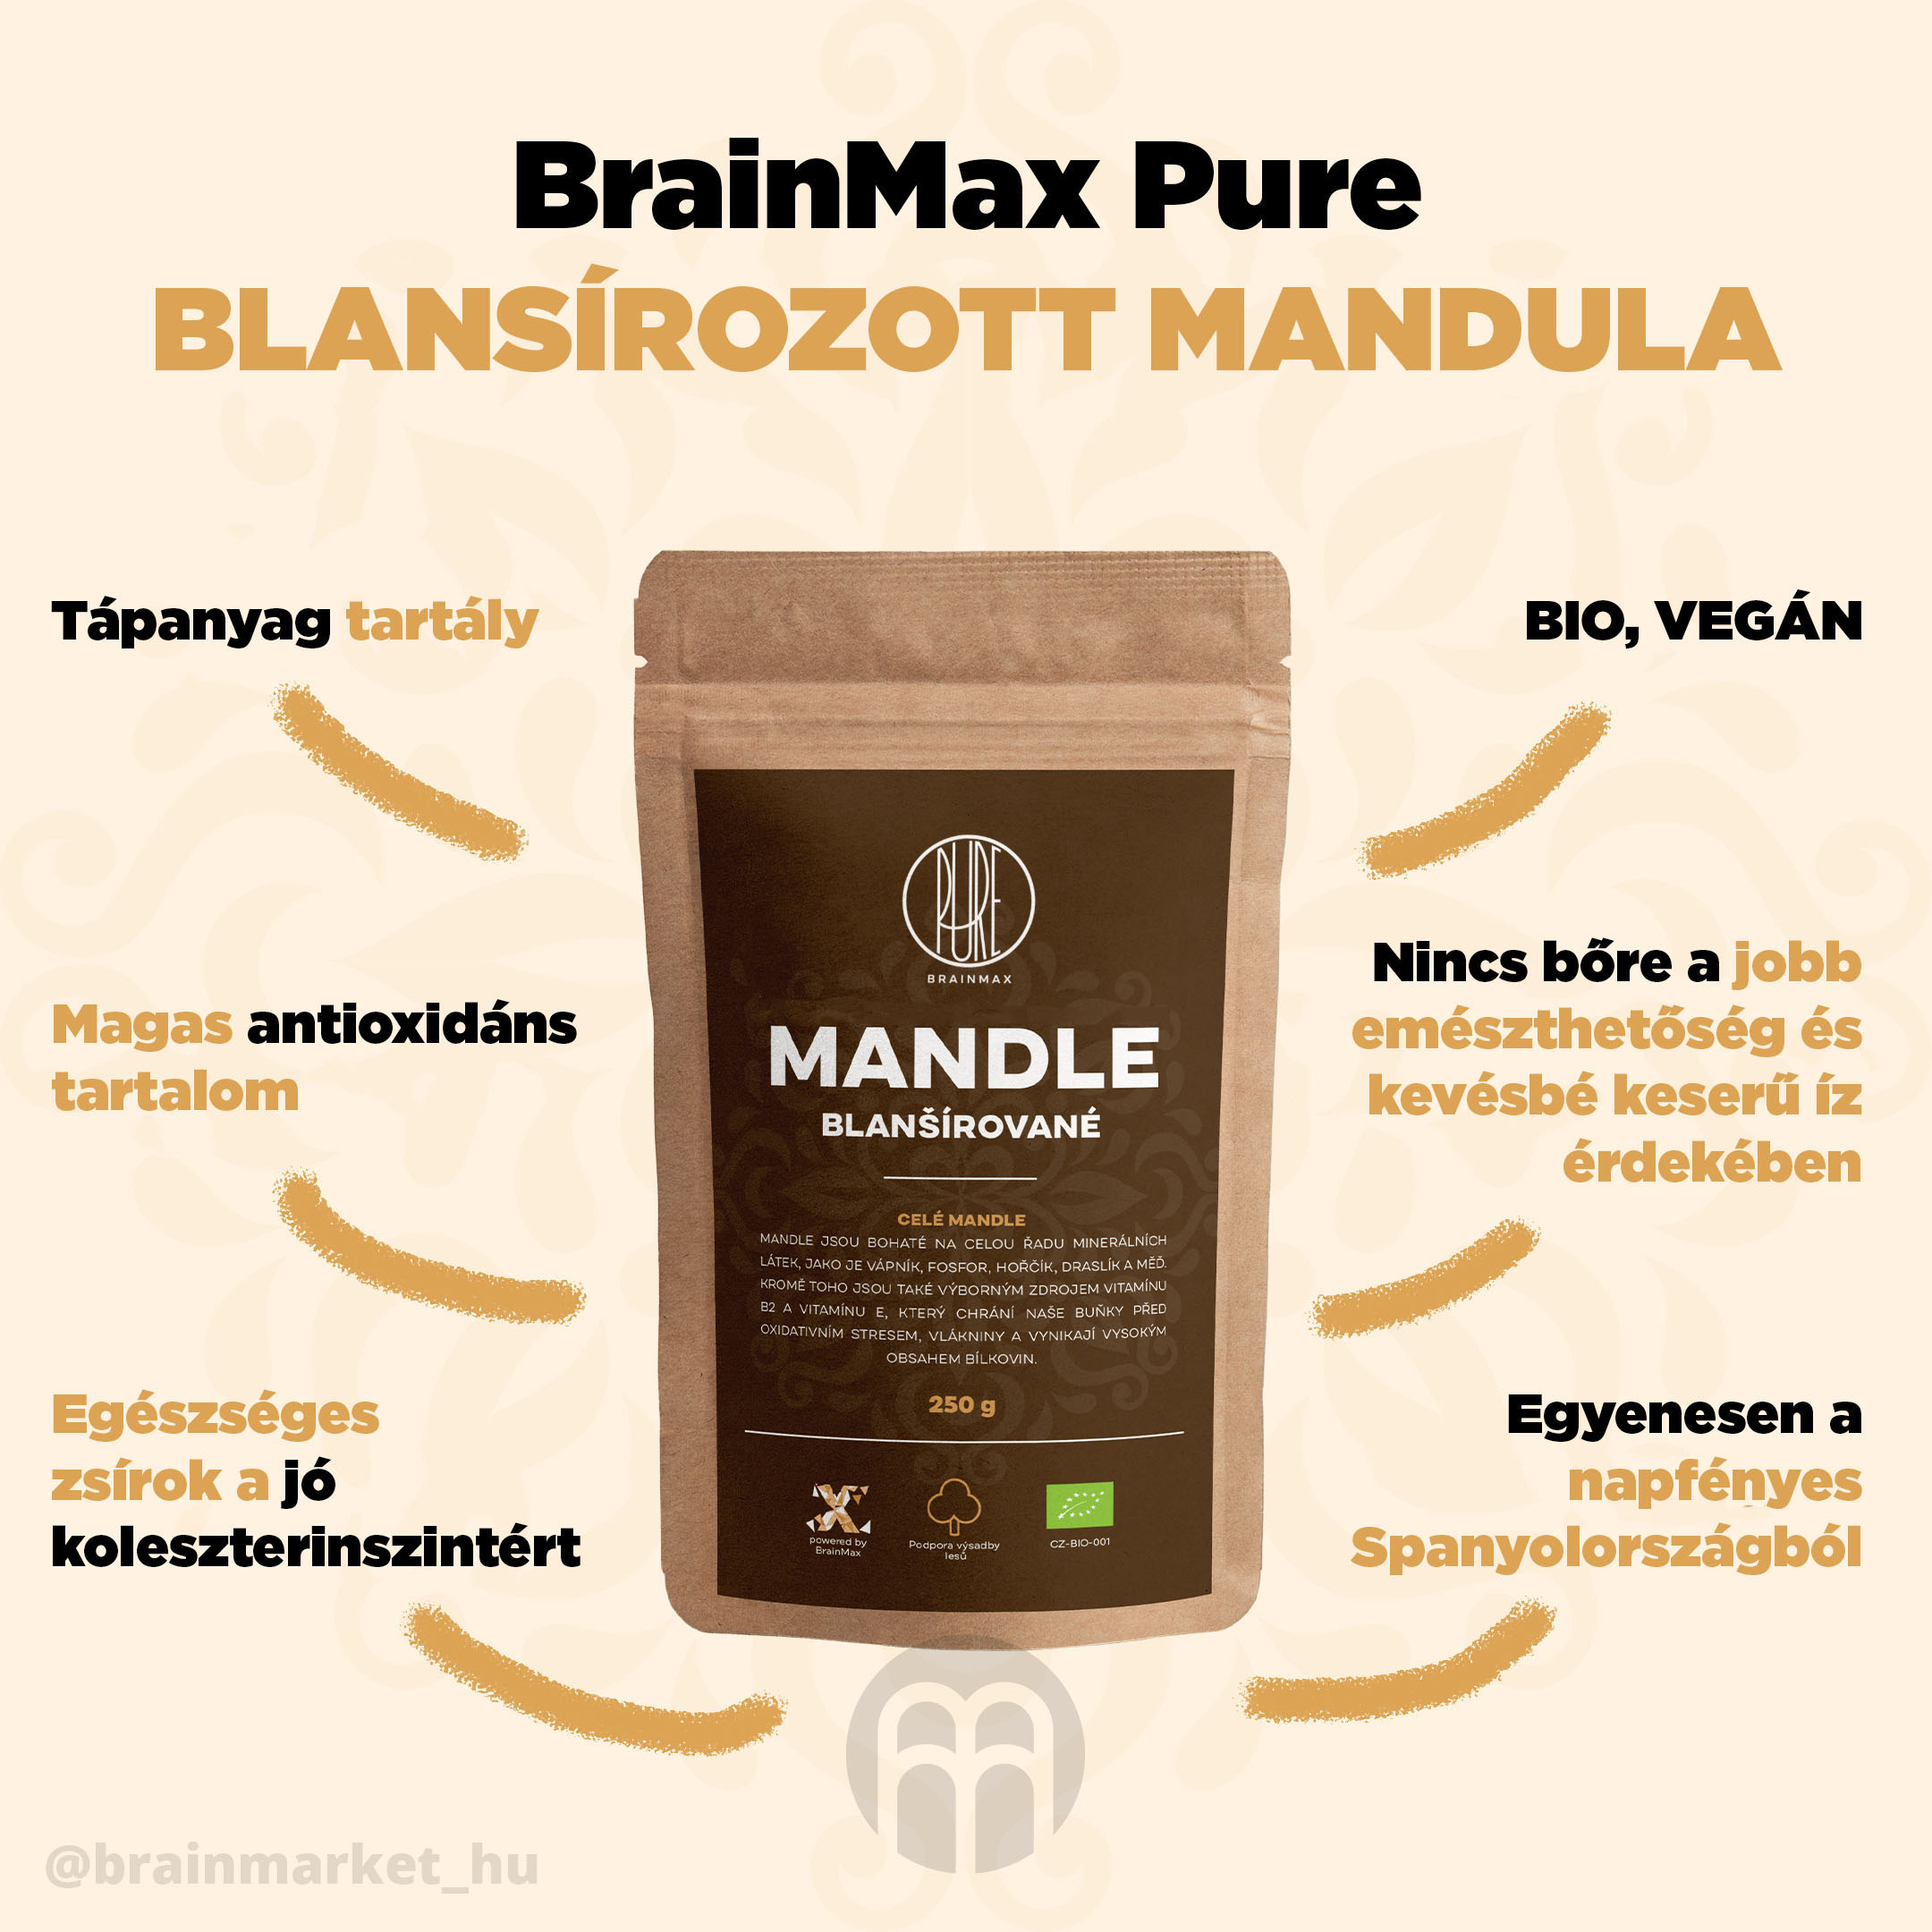 mandula-blansirovane-brainmax-pure-infographics-brainmarket-cz